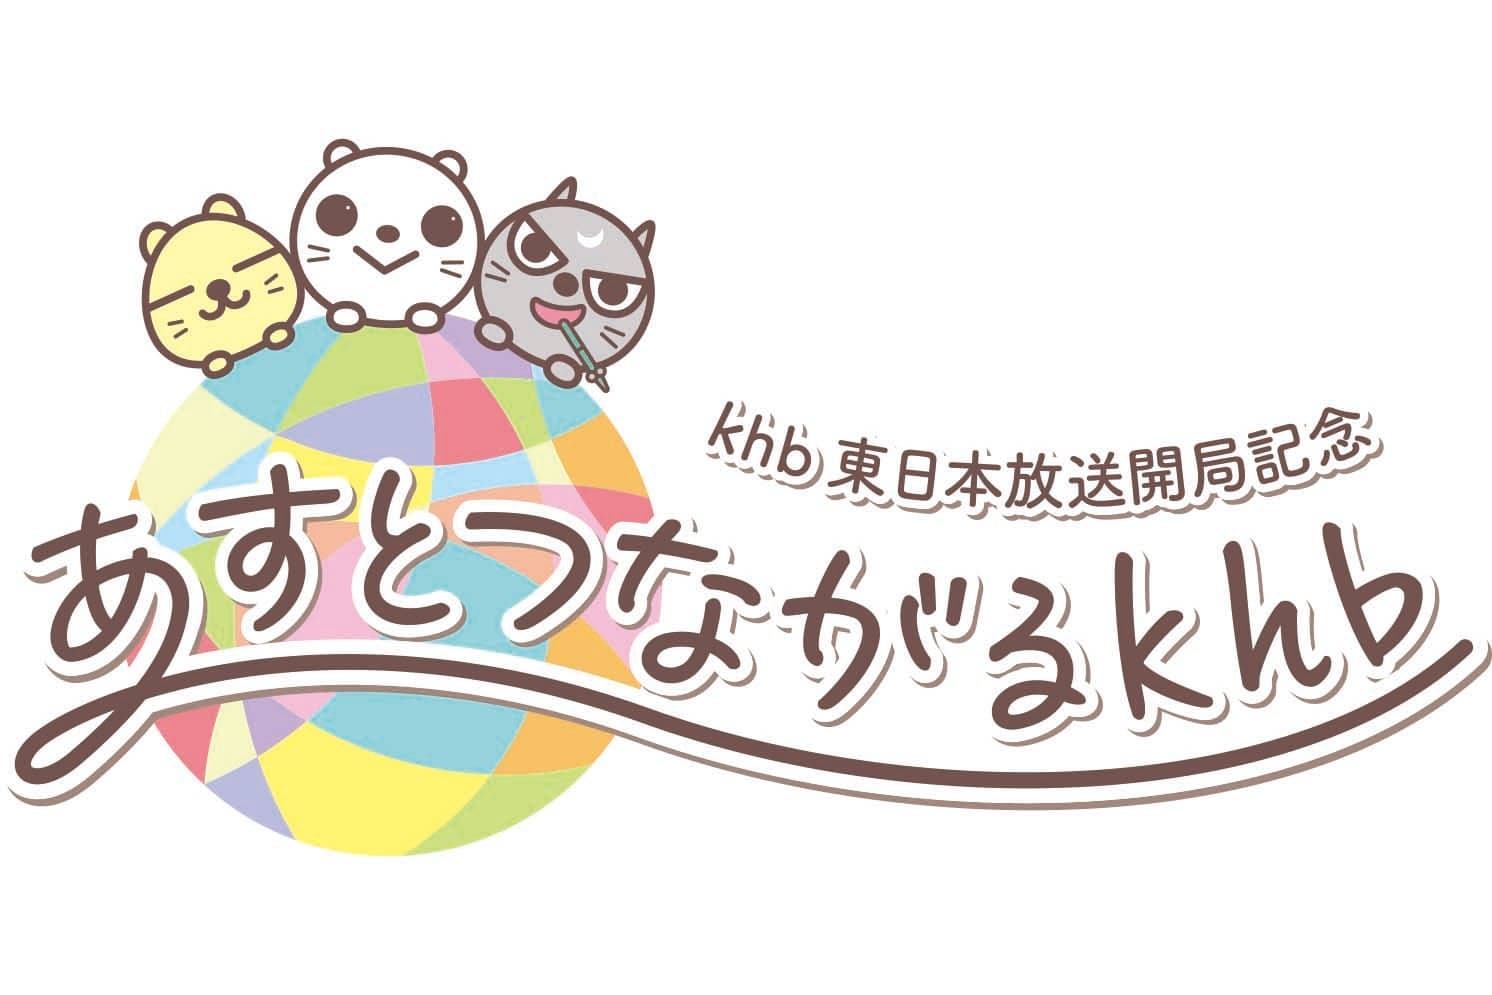 khb東日本放送開局記念「あすとつながるkhb」ロゴを乃村工藝社 IVDが担当